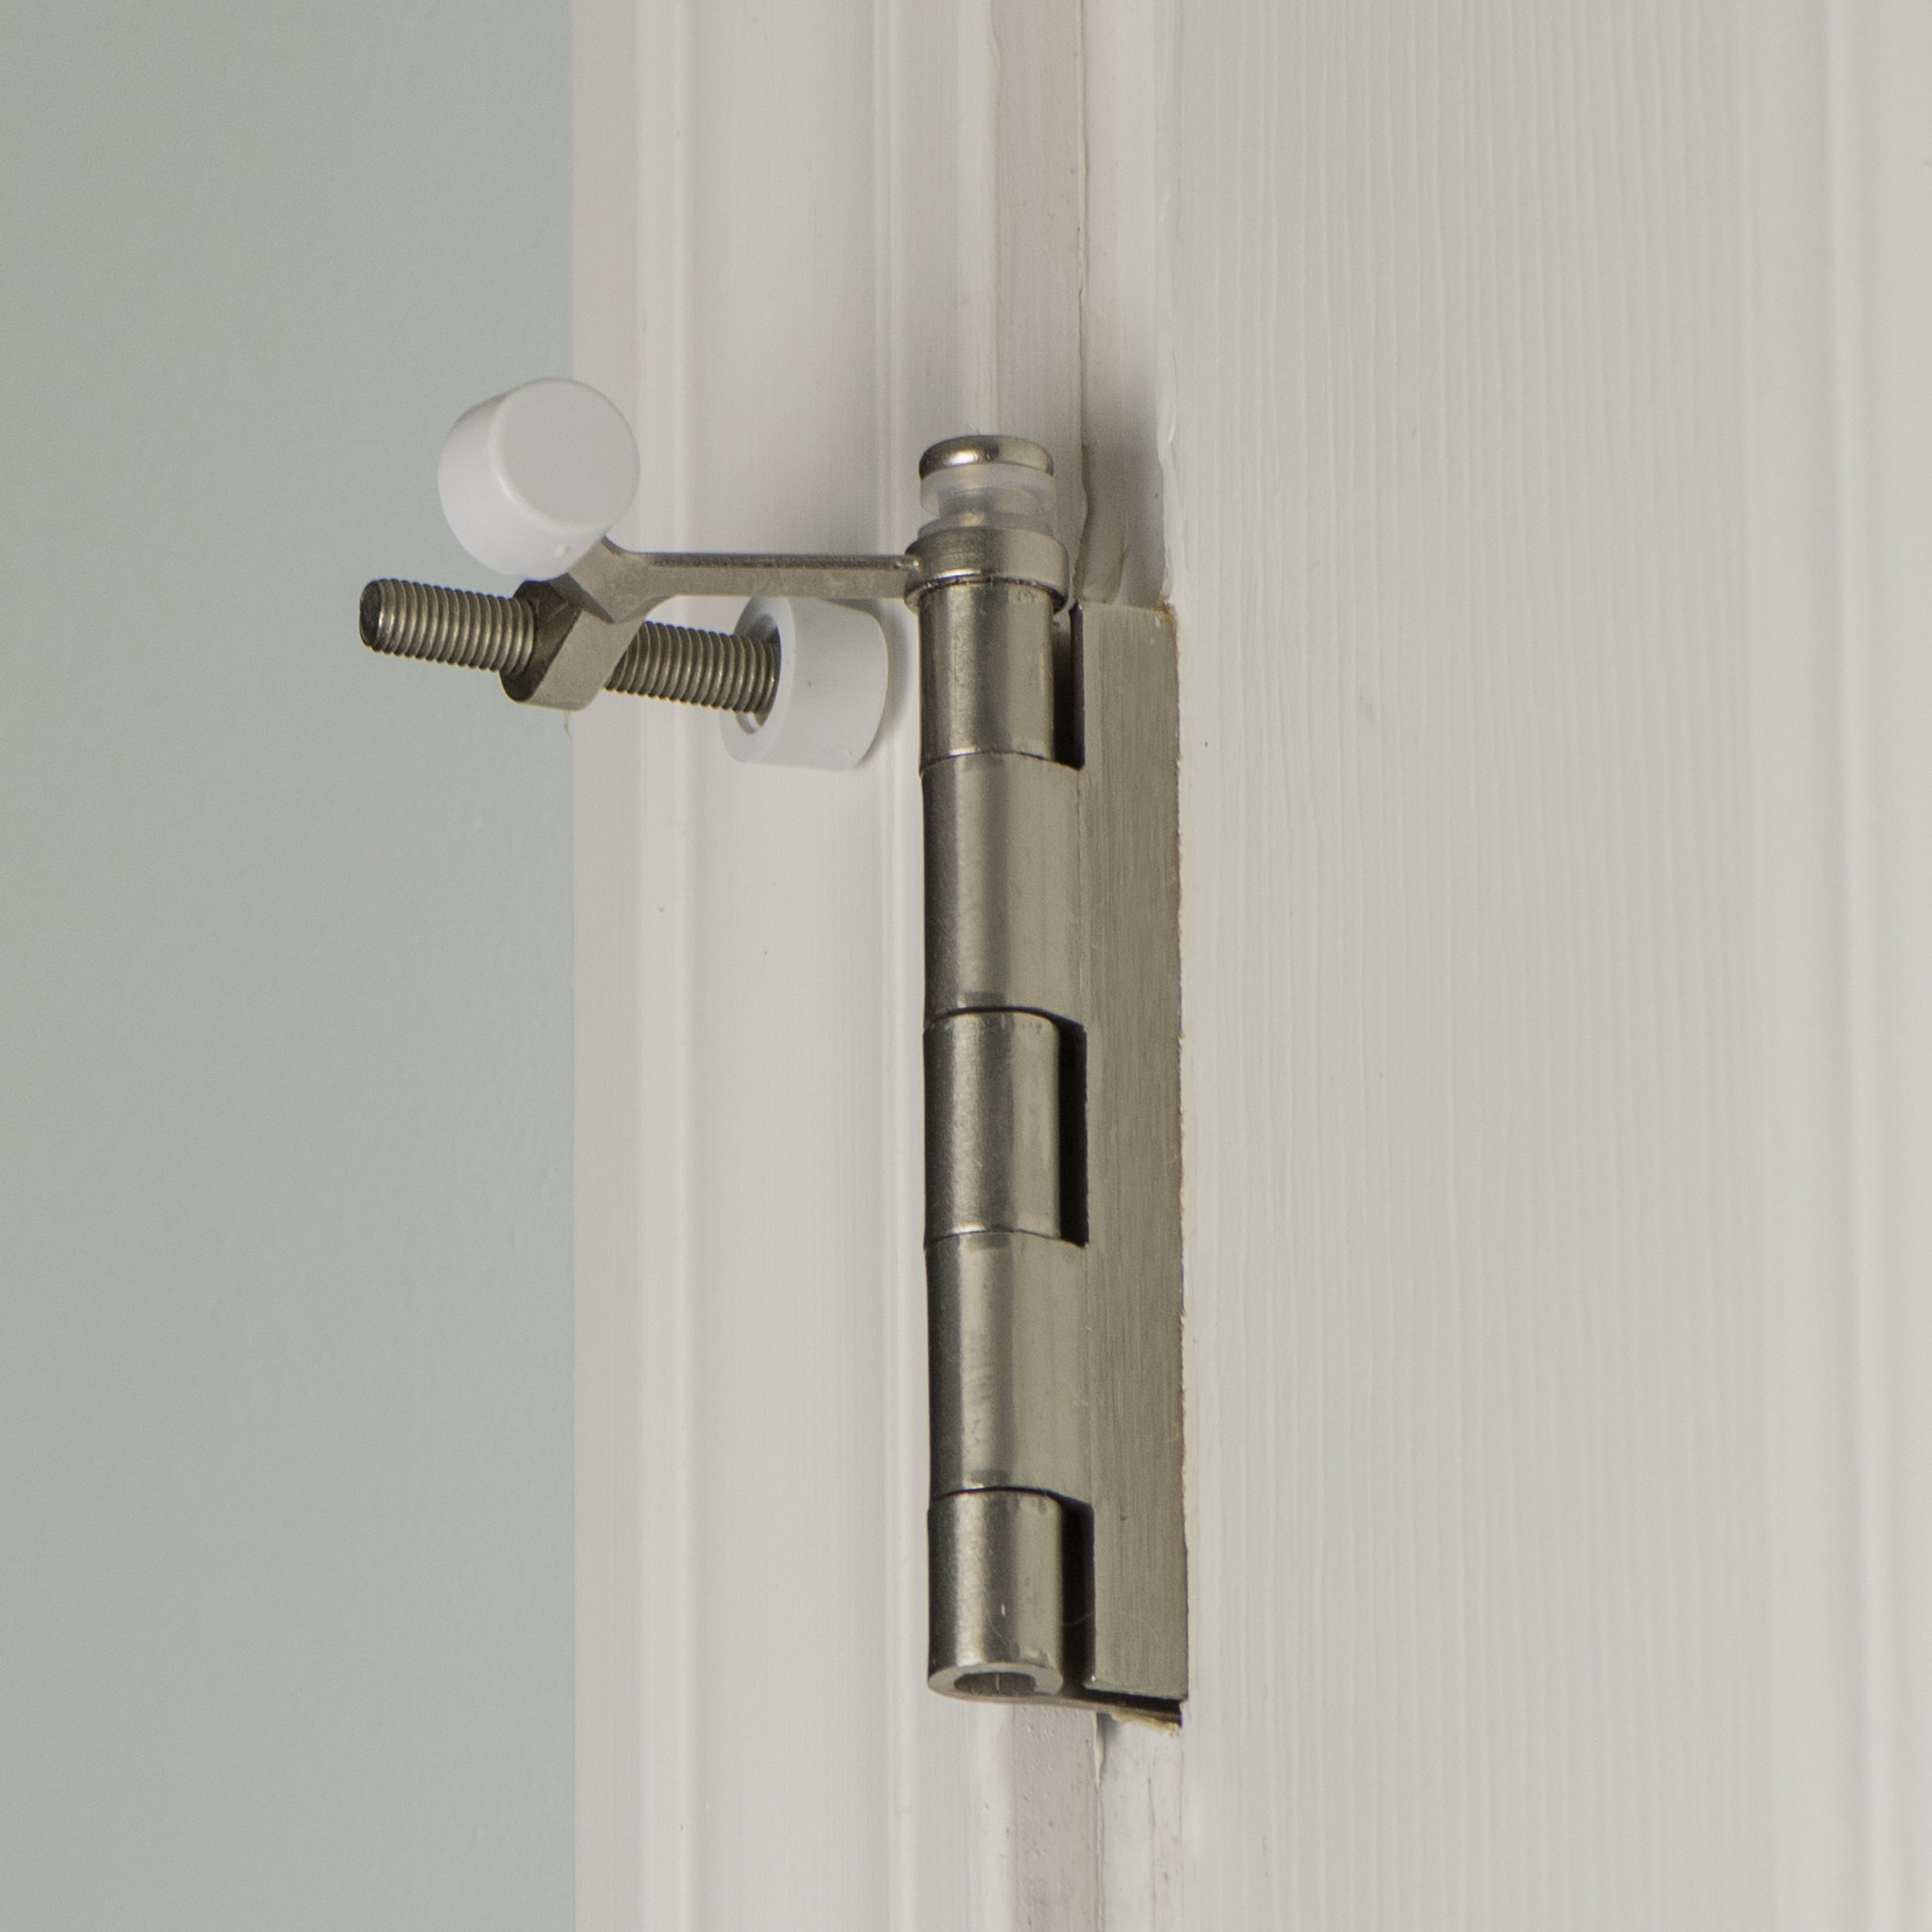 Details about   Adjustable Hinge Pin Door Stop Satin Nickel 